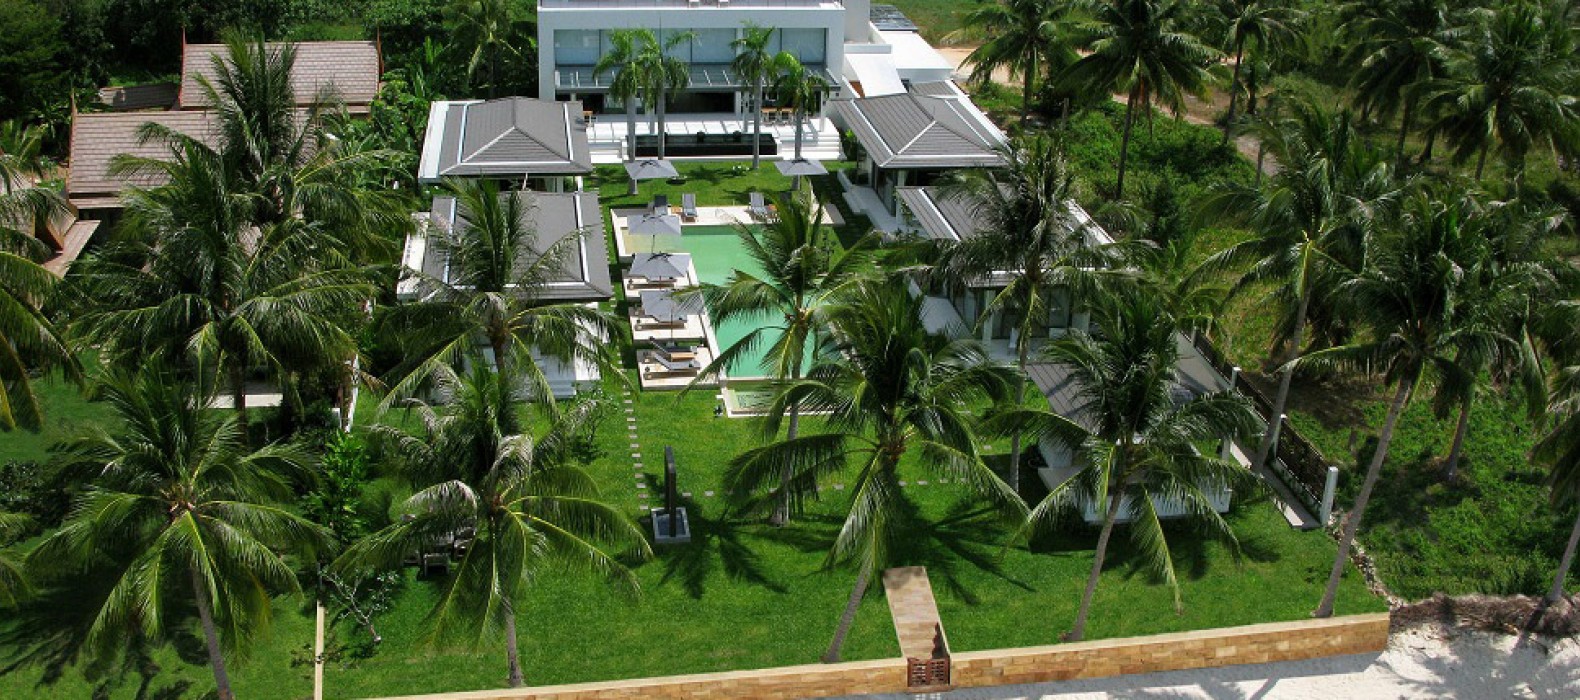 Exterior villa view of Villa Fullmoon in Koh Samui